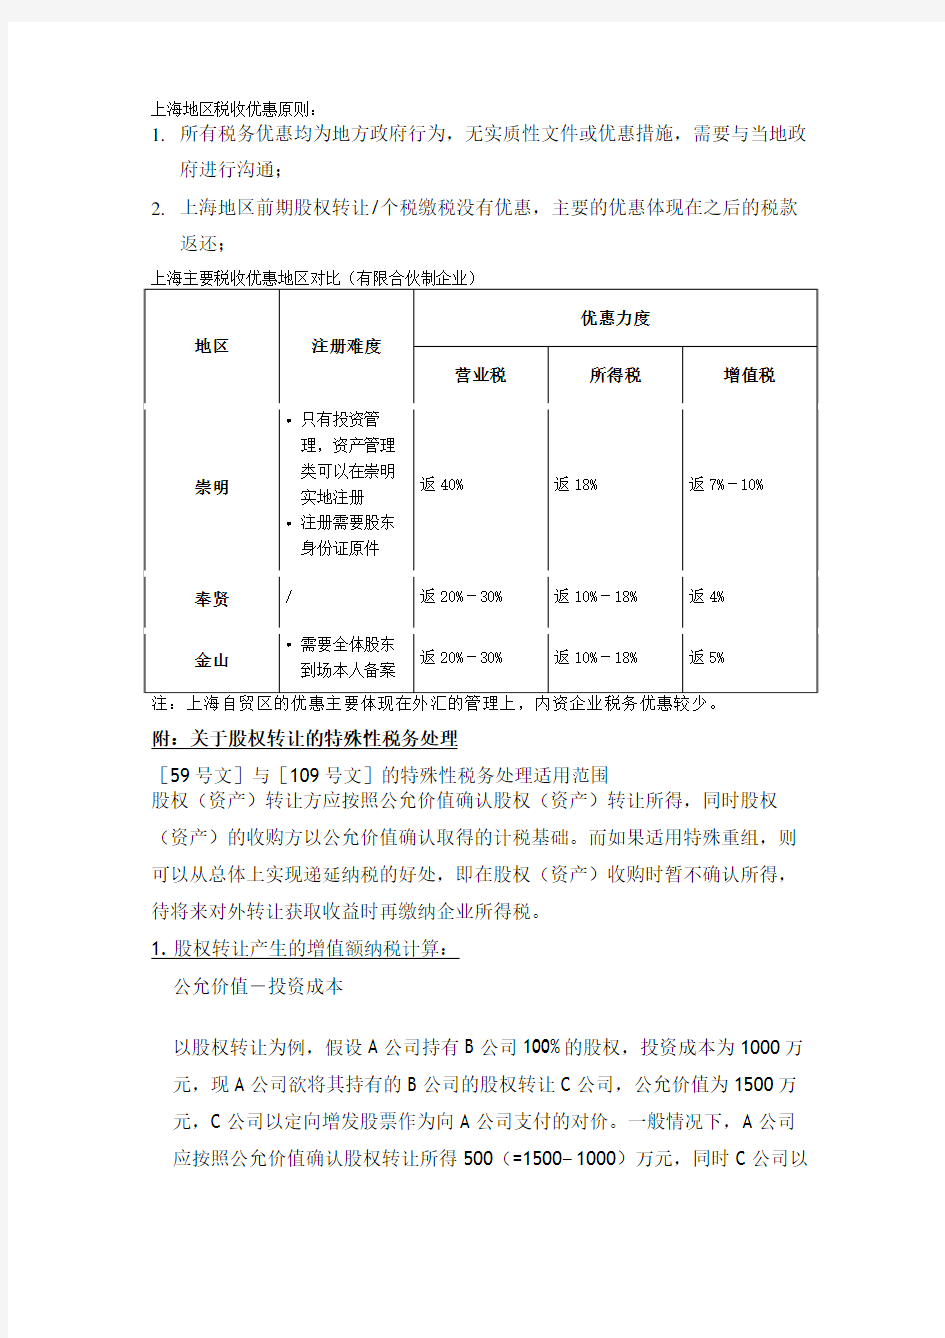 上海各地区税收优惠政策